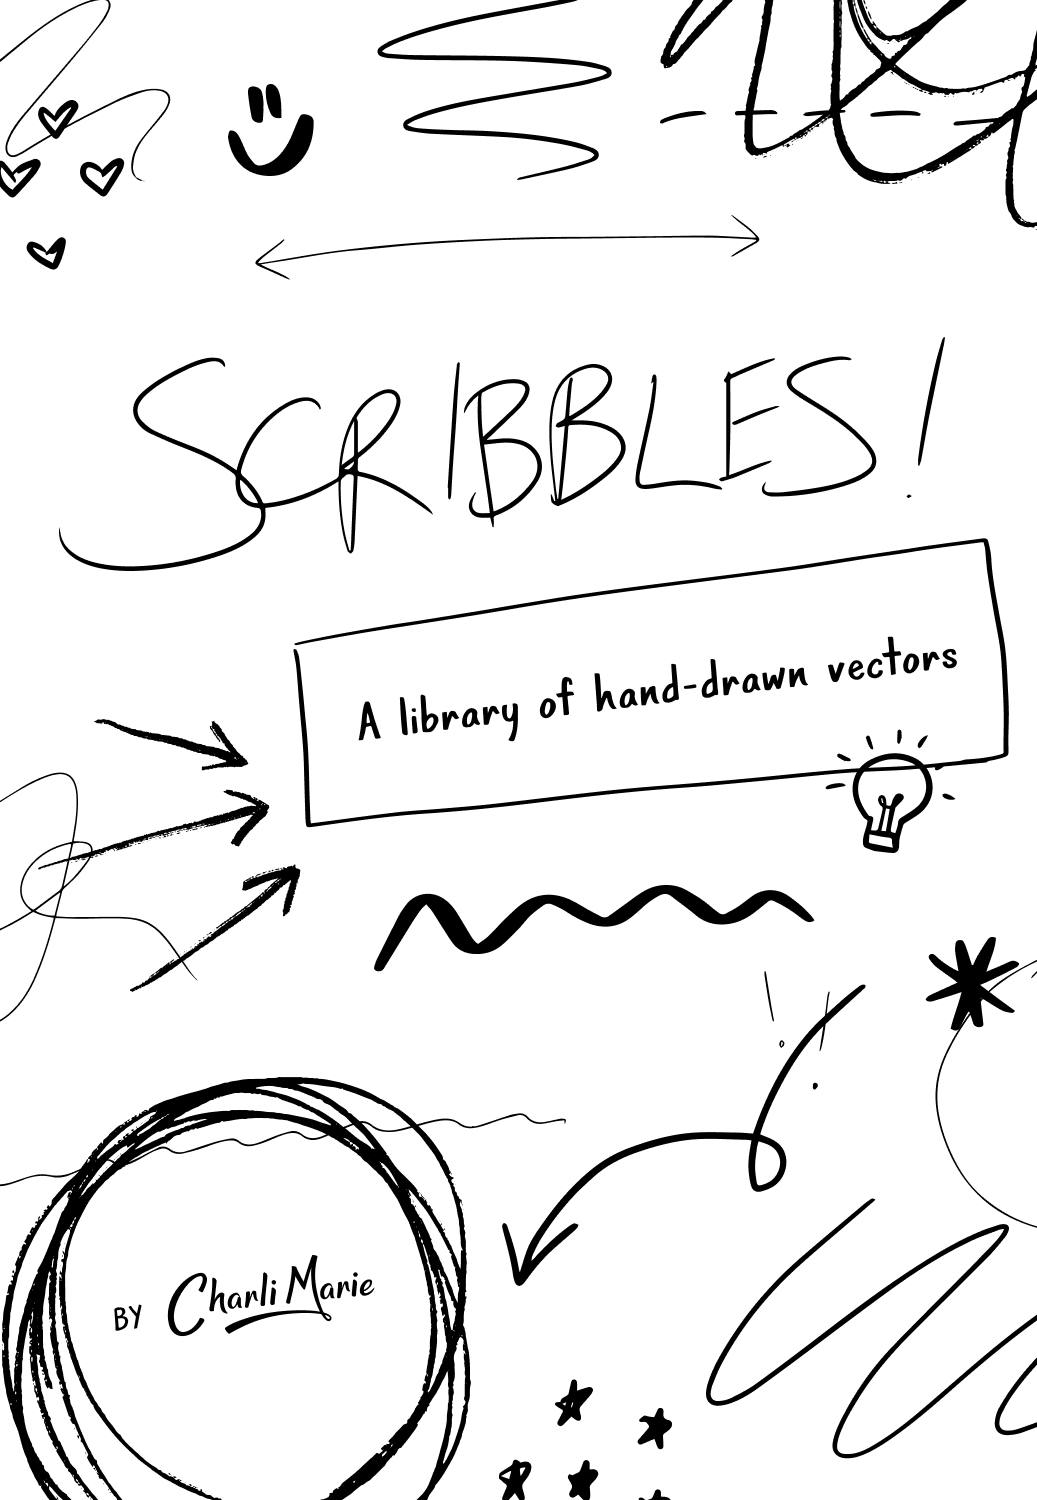 Scribbles - Hand-drawn vectors